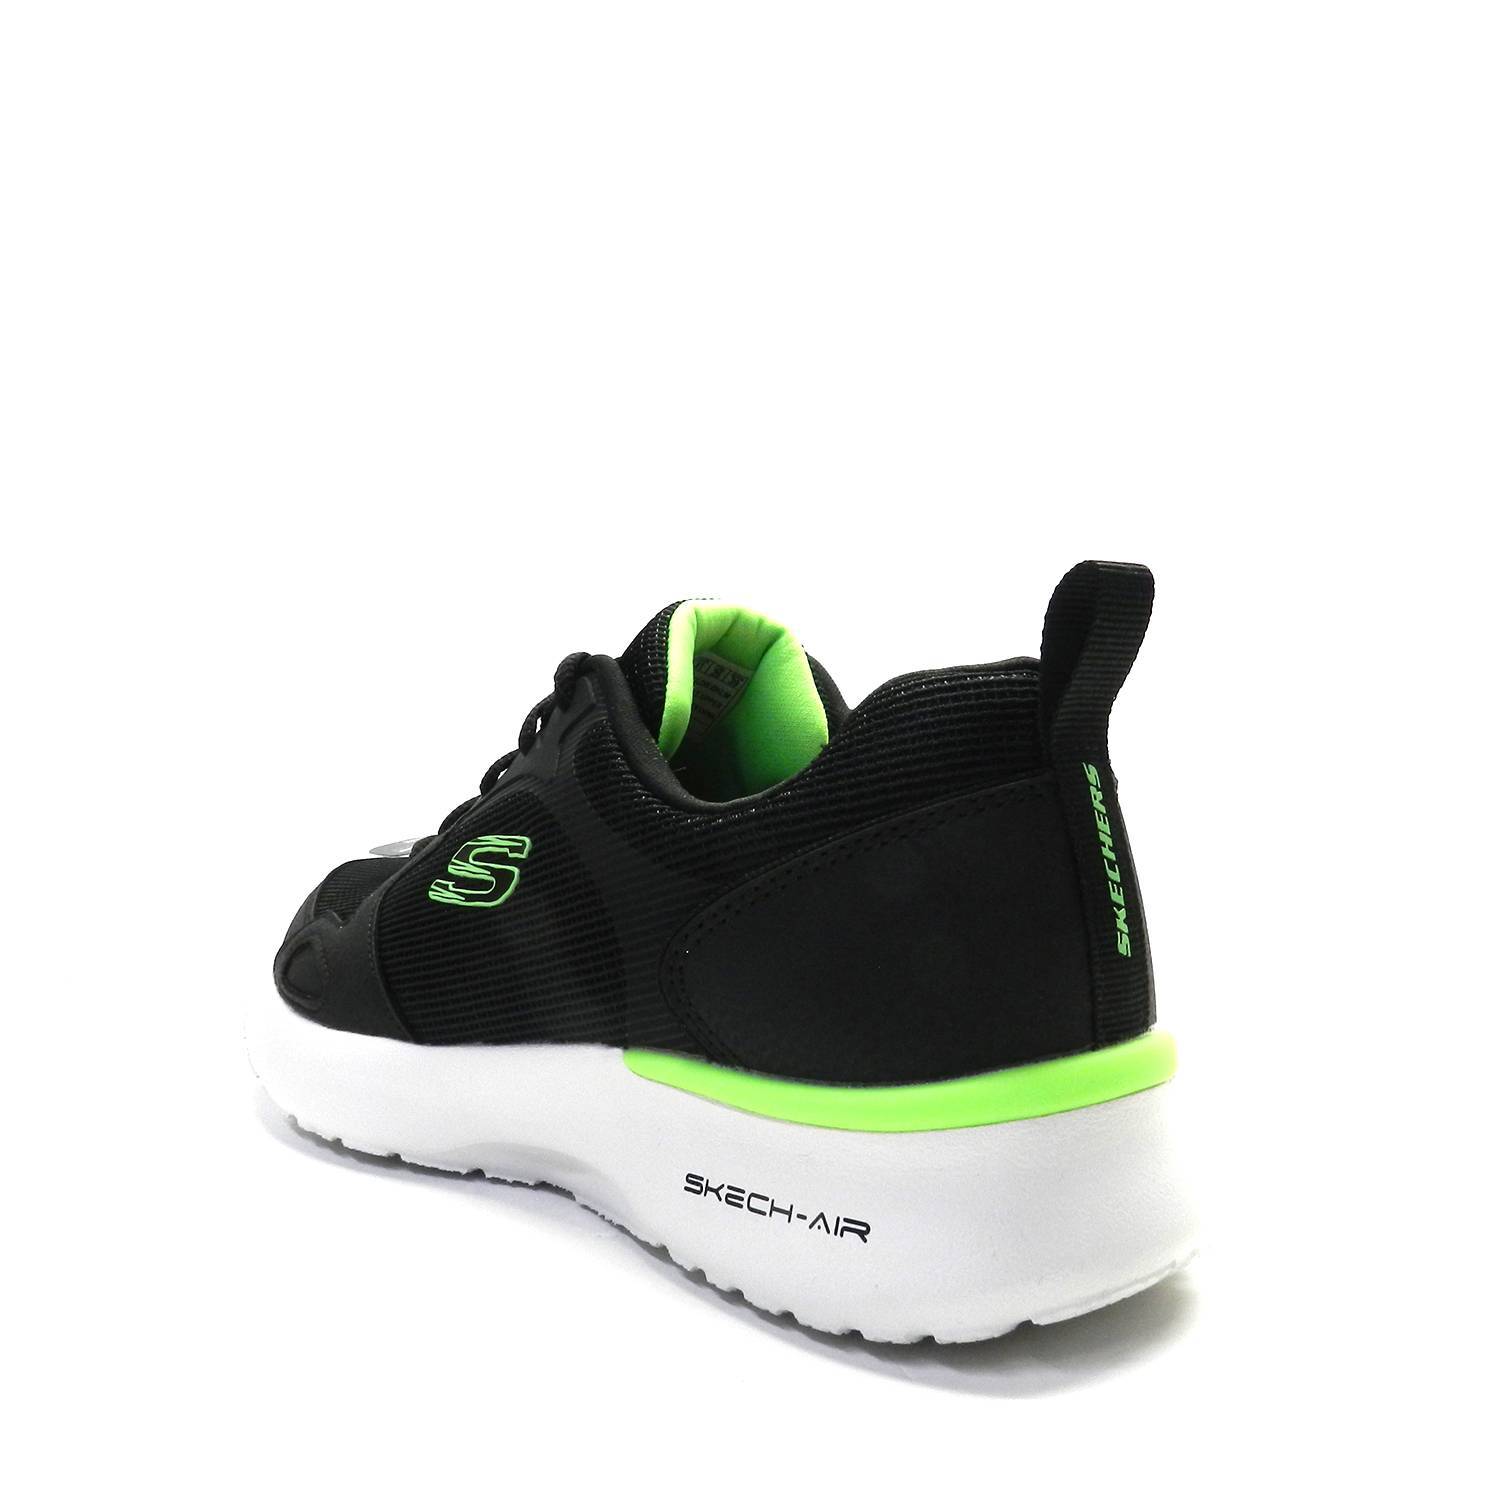 Zapatillas de la marca Skechers, modelo Air Dynamight en color negro. Zapatillas deportivas elaboradas en tejido sintético y malla. Plantilla de  Memory Foam con amortiguación, mediasuela con cámara de aire Skech-Air, suela de goma flexible con tracción. Talón de 3,2 cm